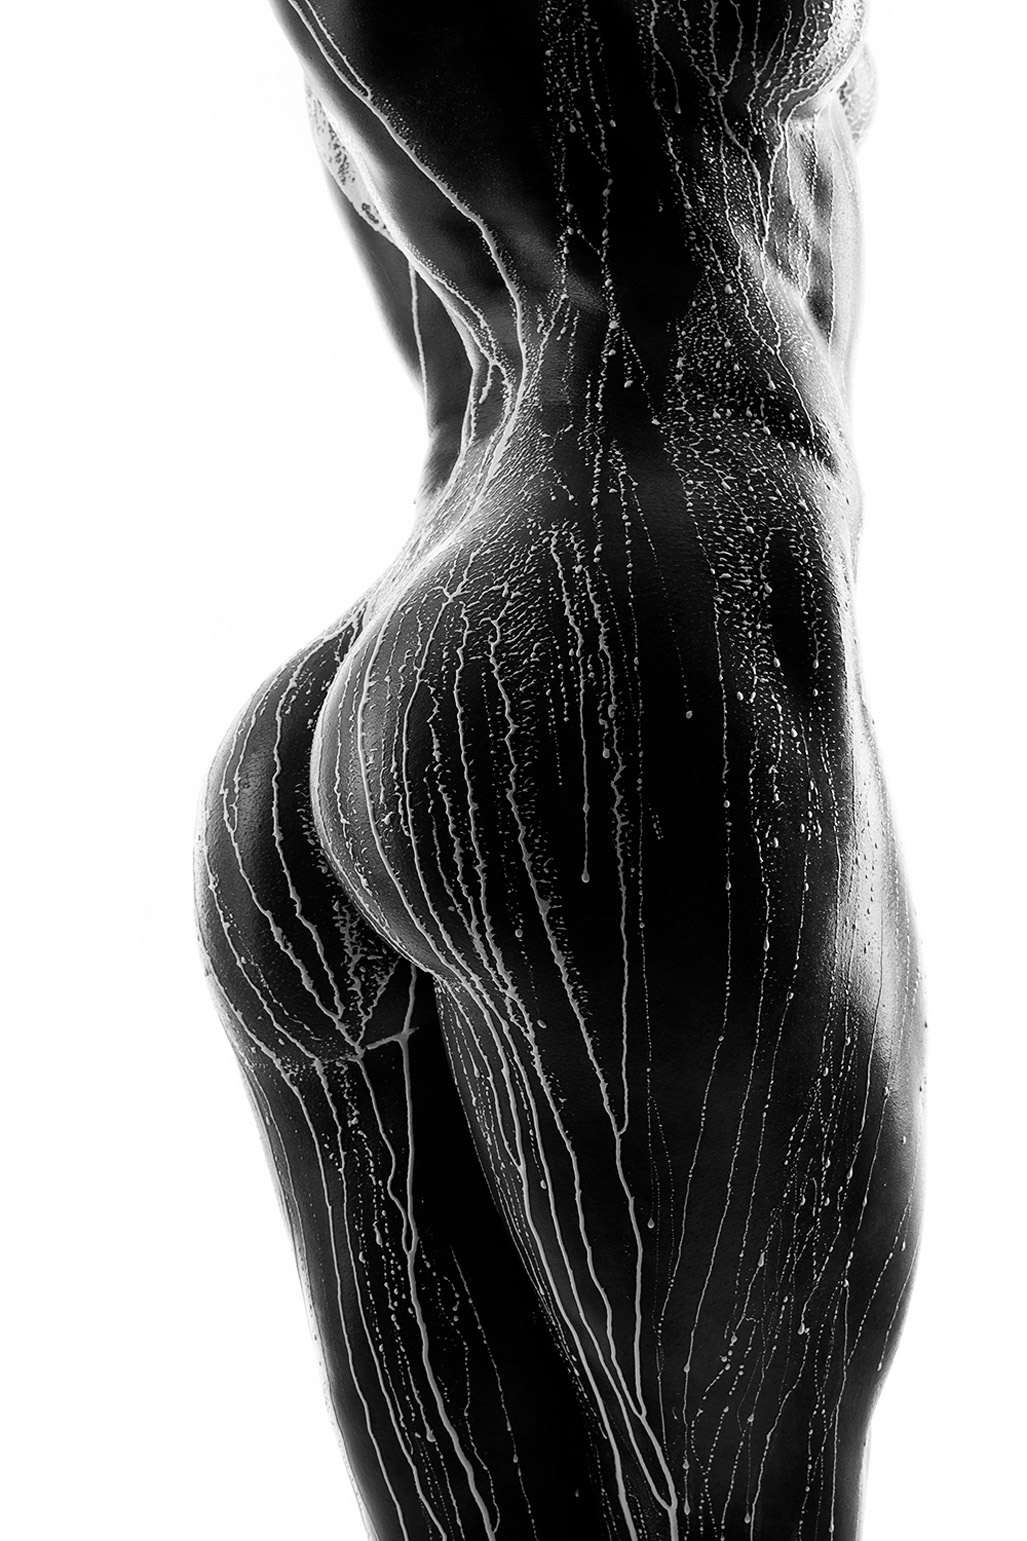 Эротические работы фотографа Александра Лищинского / Art Nude photo by Aleksandr Lishchinskiy